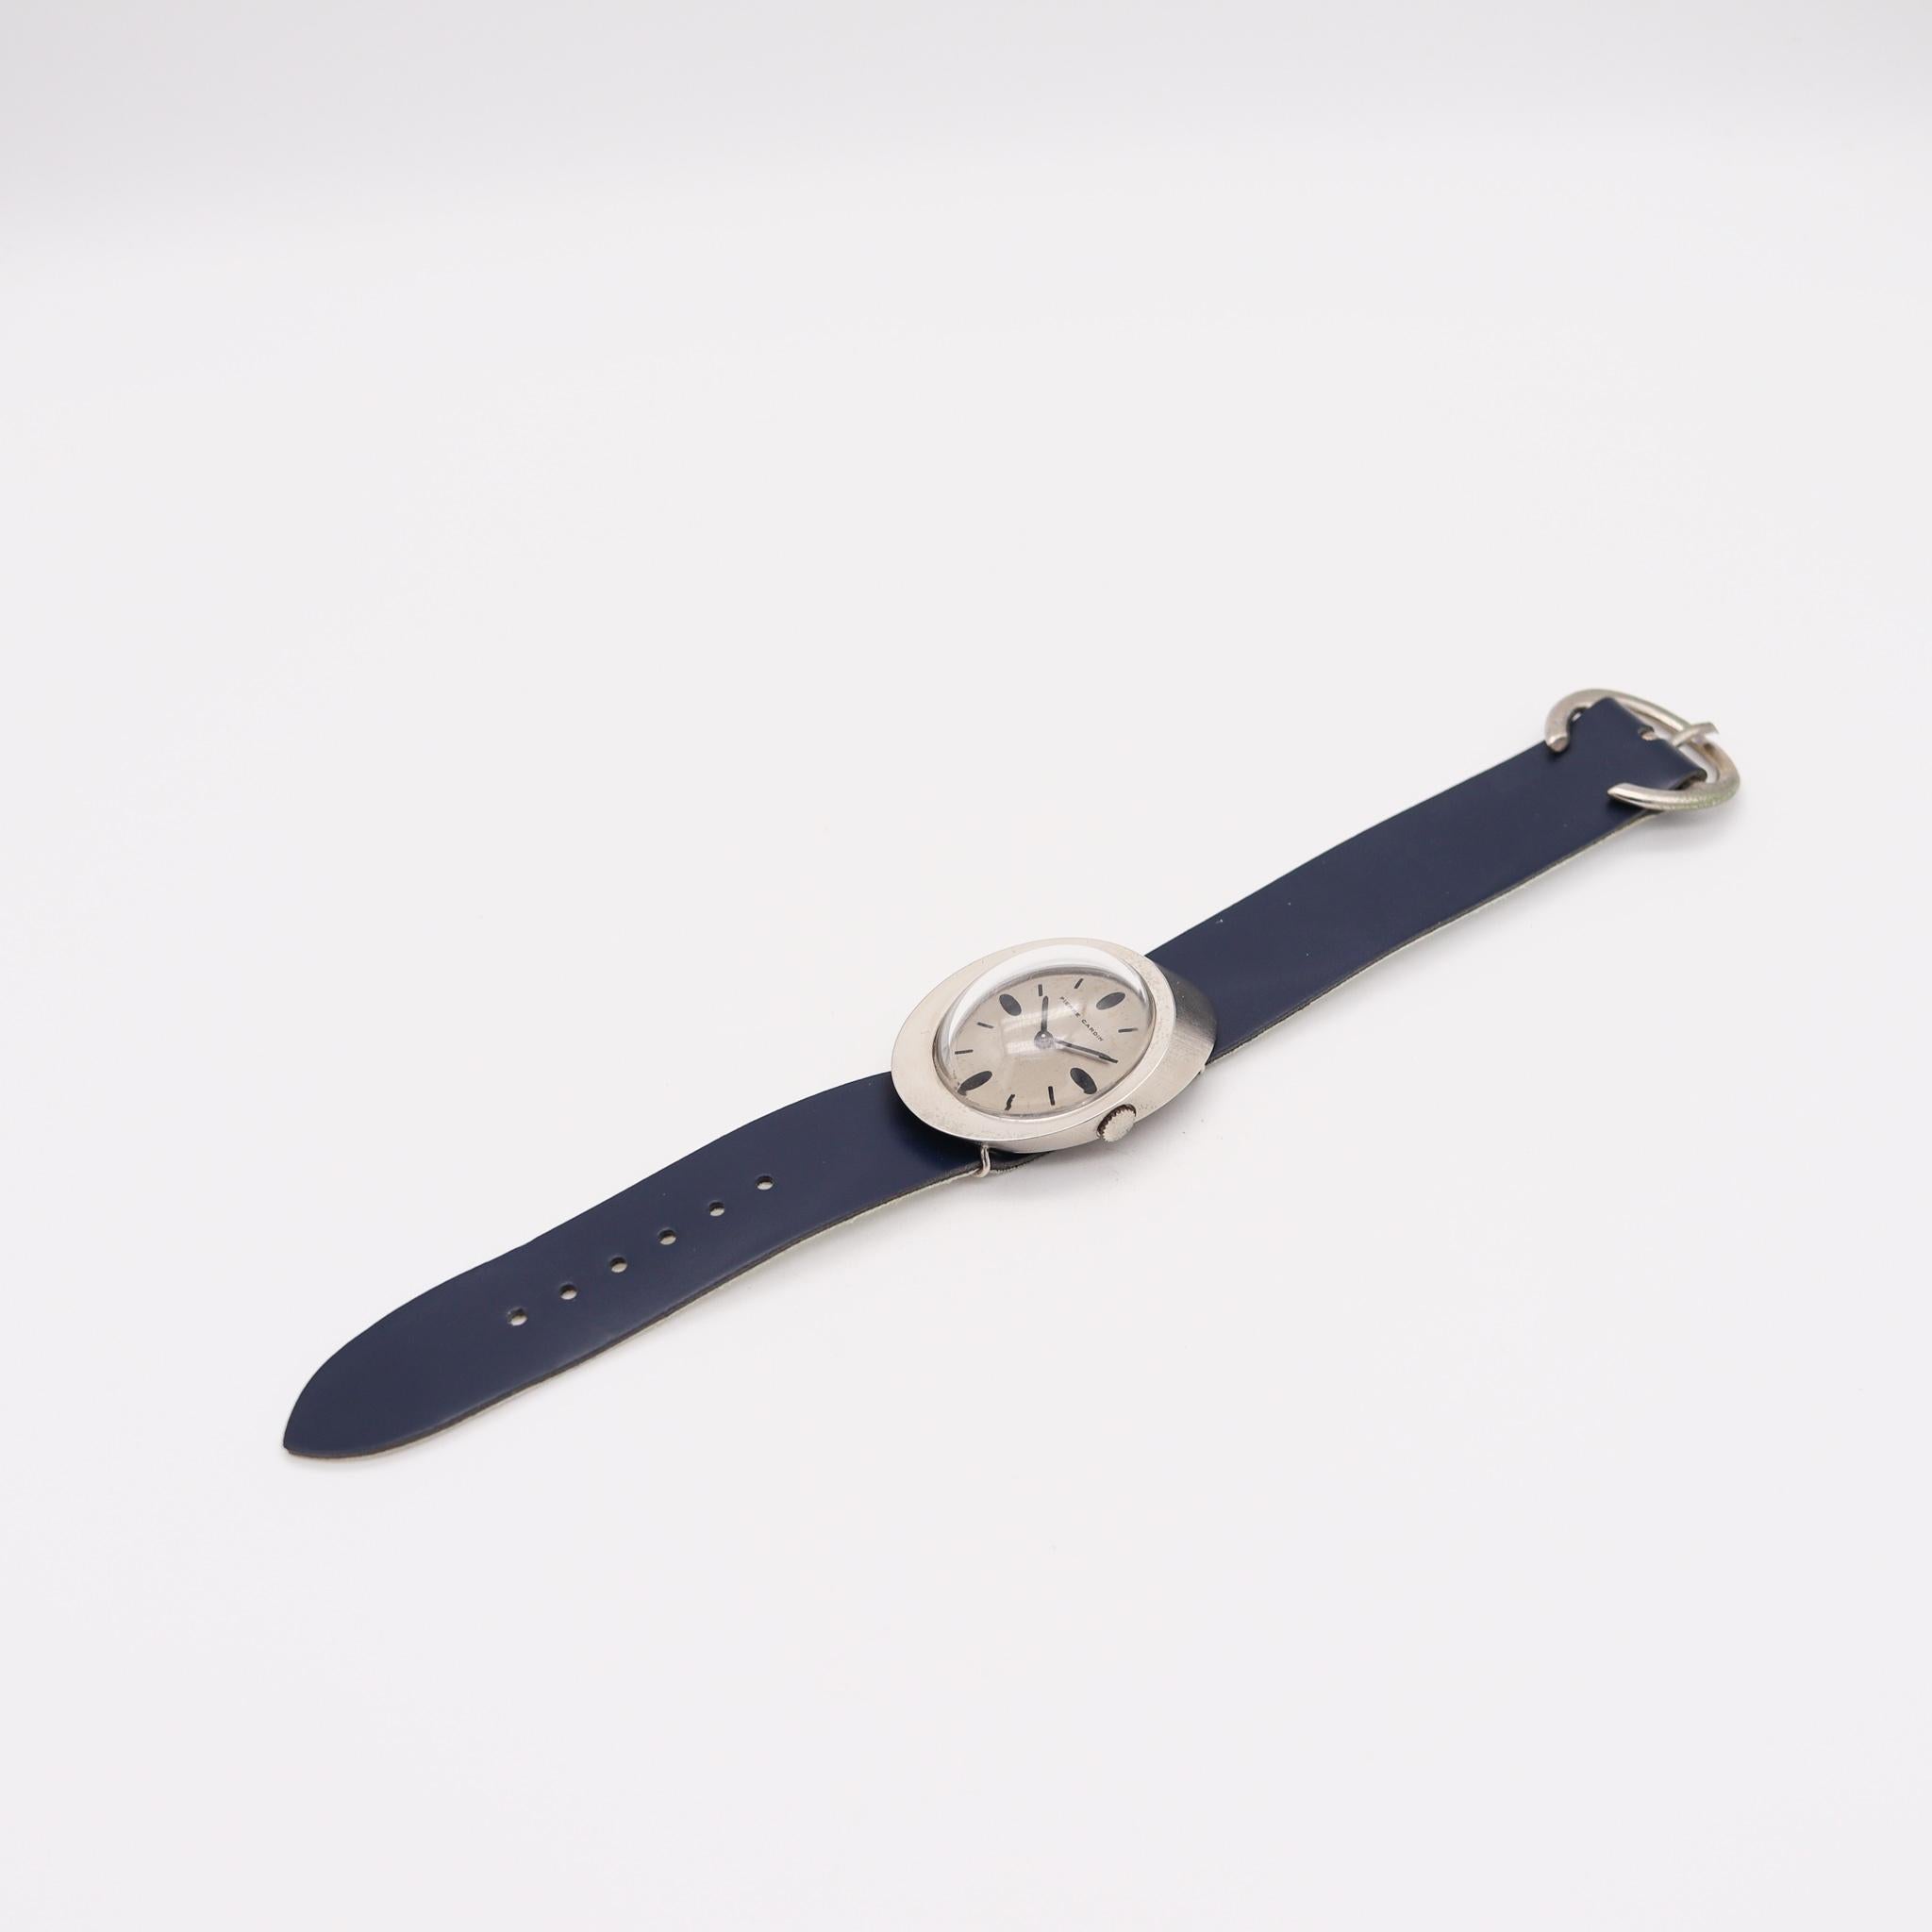 Jaeger-LeCoultre PC107 Handgelenkuhr, entworfen von Pierre Cardin.

Fabelhafte Retro-Armbanduhr, entworfen in Frankreich vom Pariser Modedesigner Pierre Cardin im Jahr 1971. Diese schöne und seltene Uhr ist das Pierre Cardin Modell PC107, und wurde